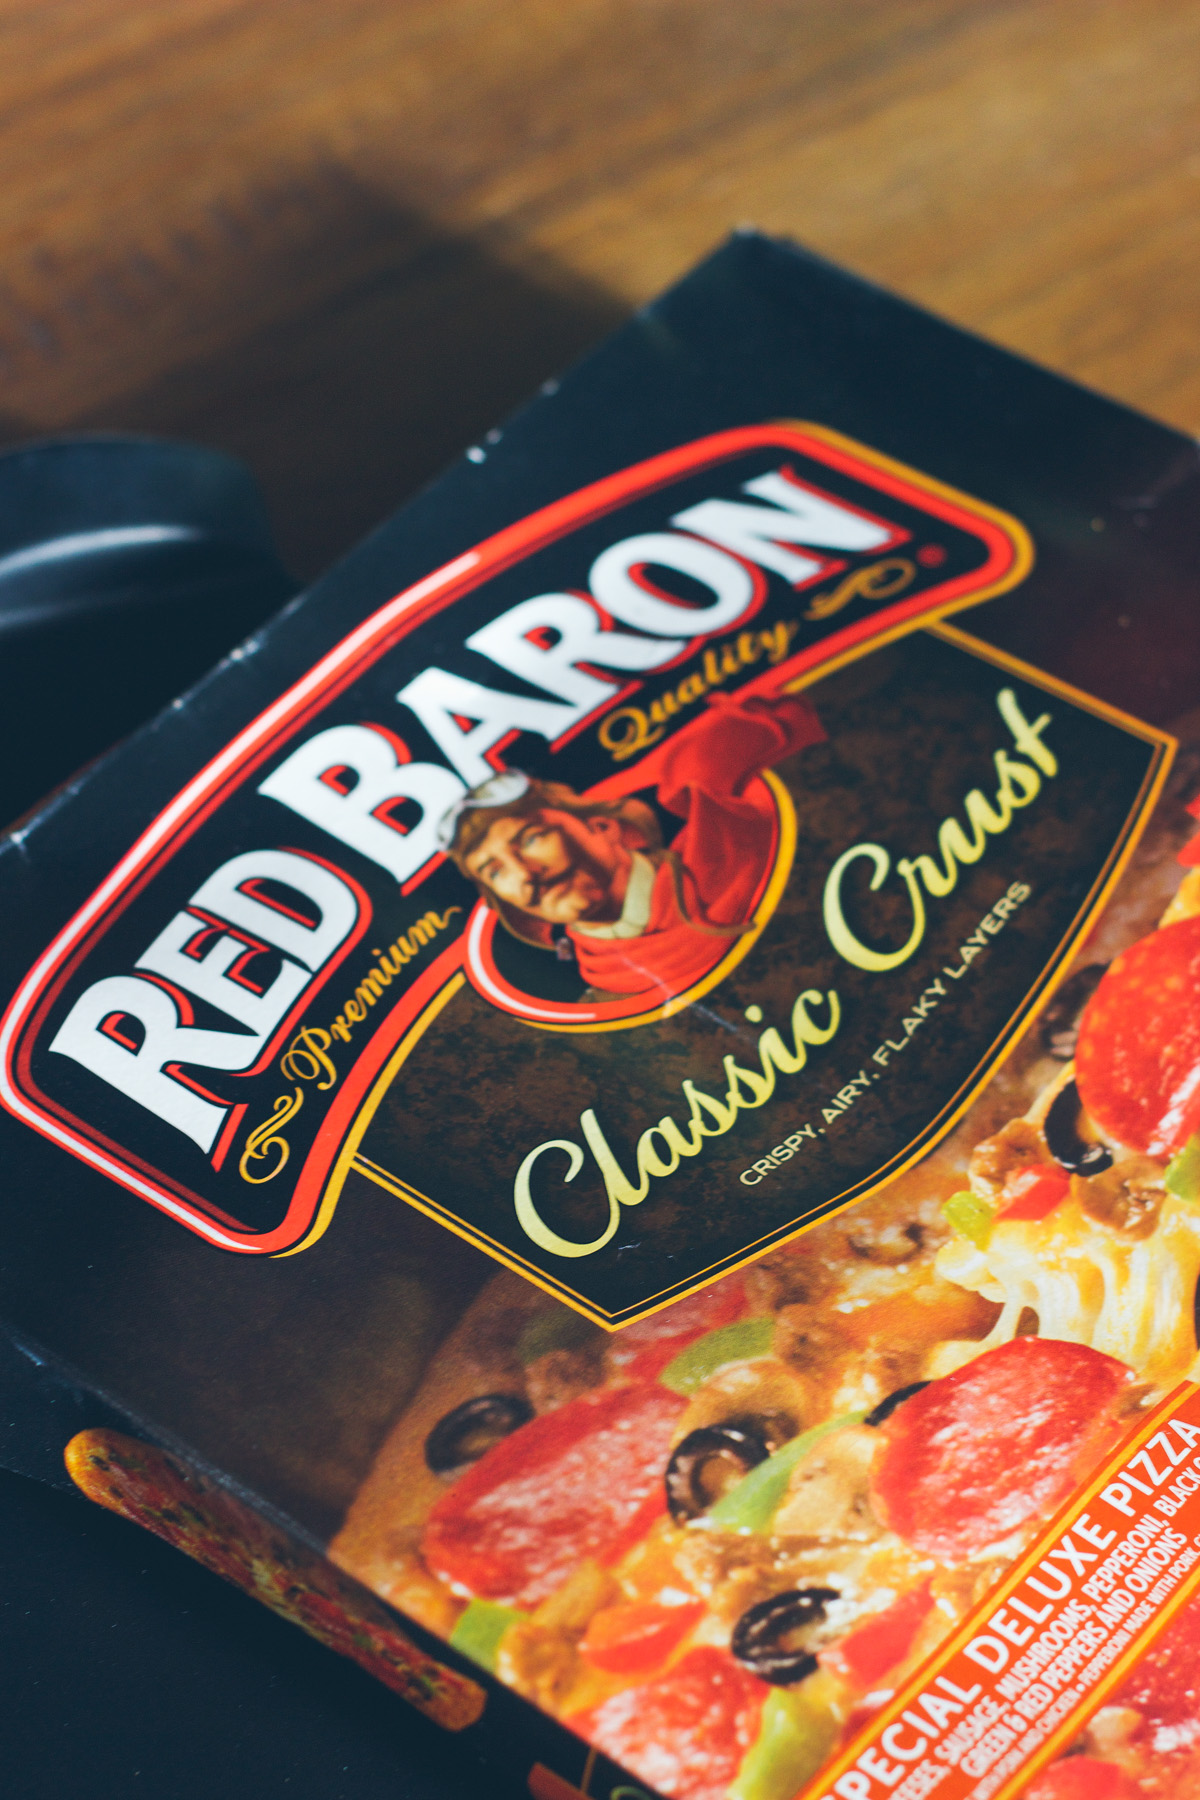 red baron supreme pizza